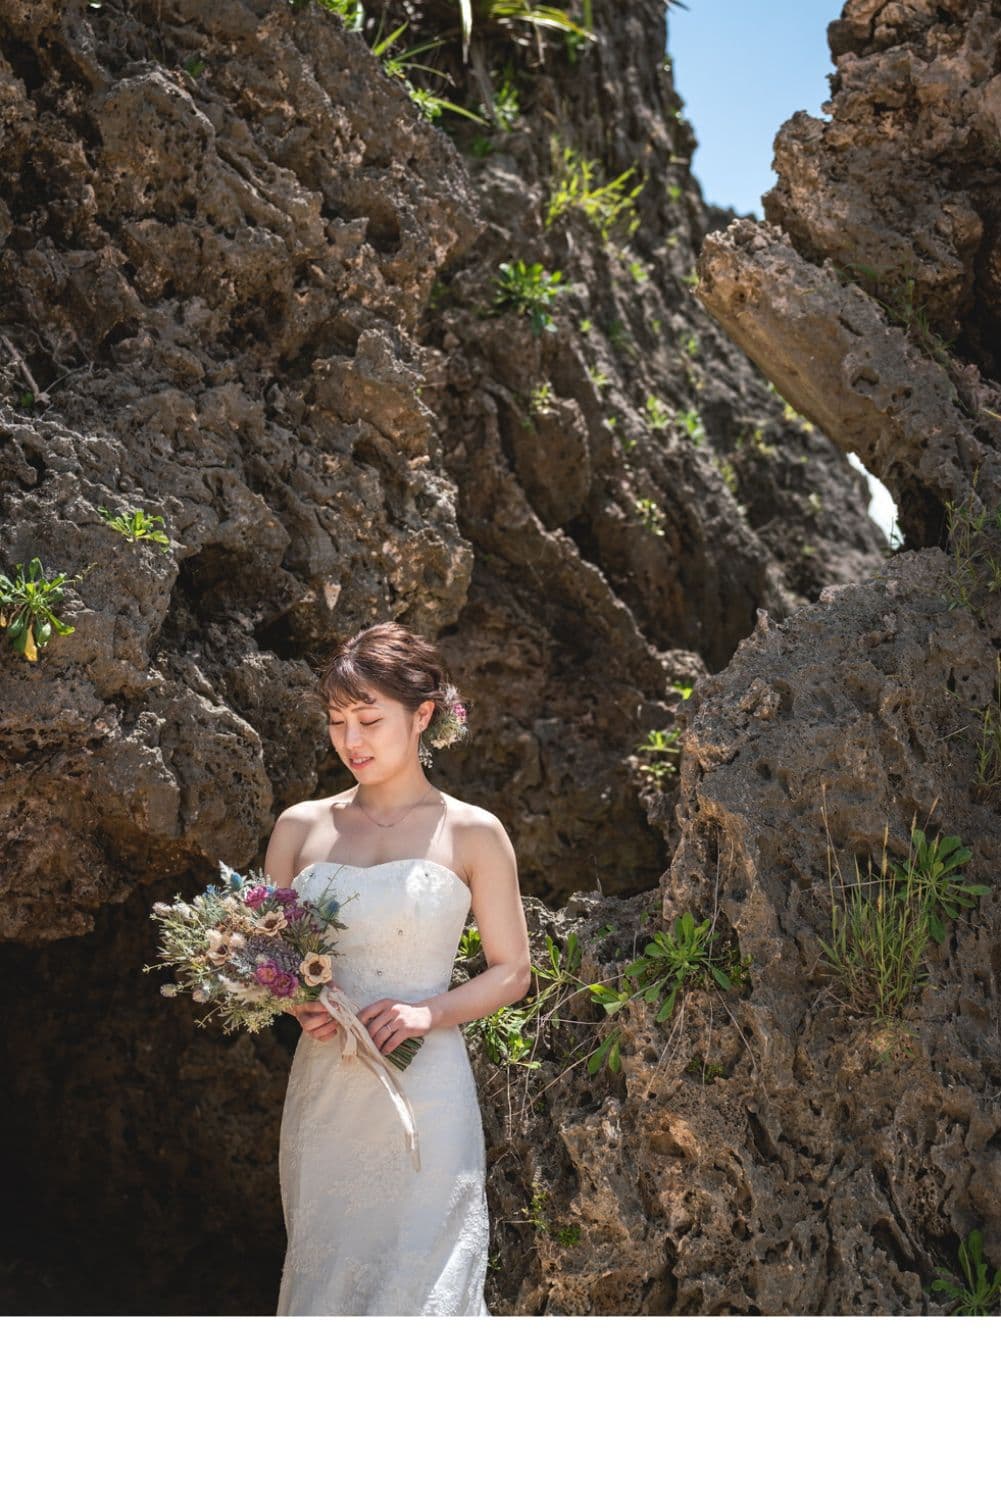 石垣島の海にある岩場でブーケを眺める新婦